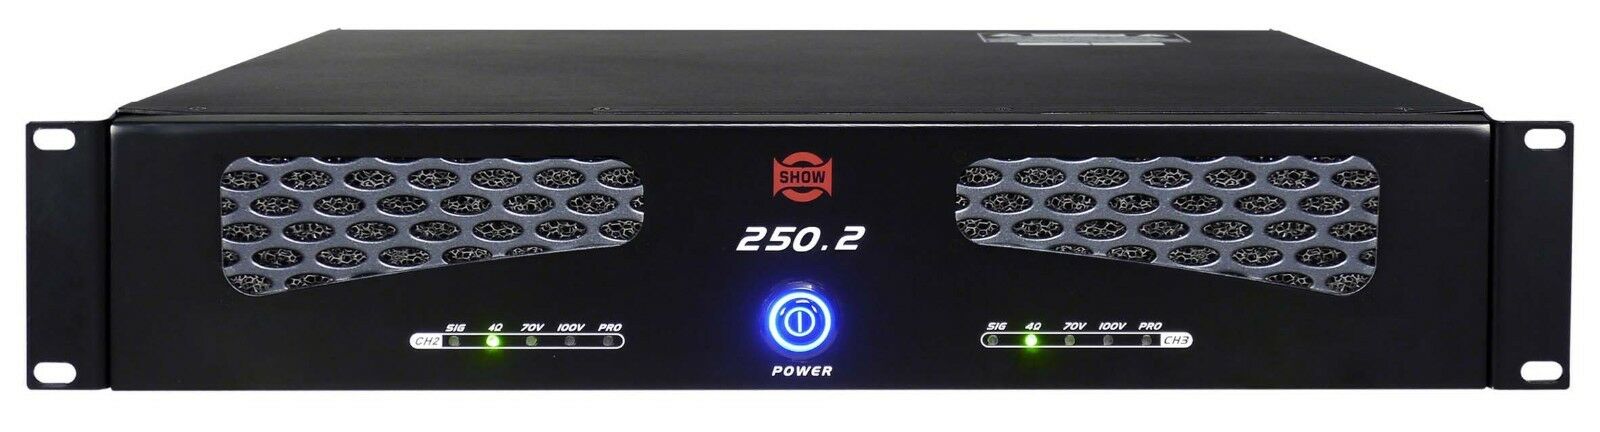 250-2 Amplifier Pa Of Power 2 X 500w